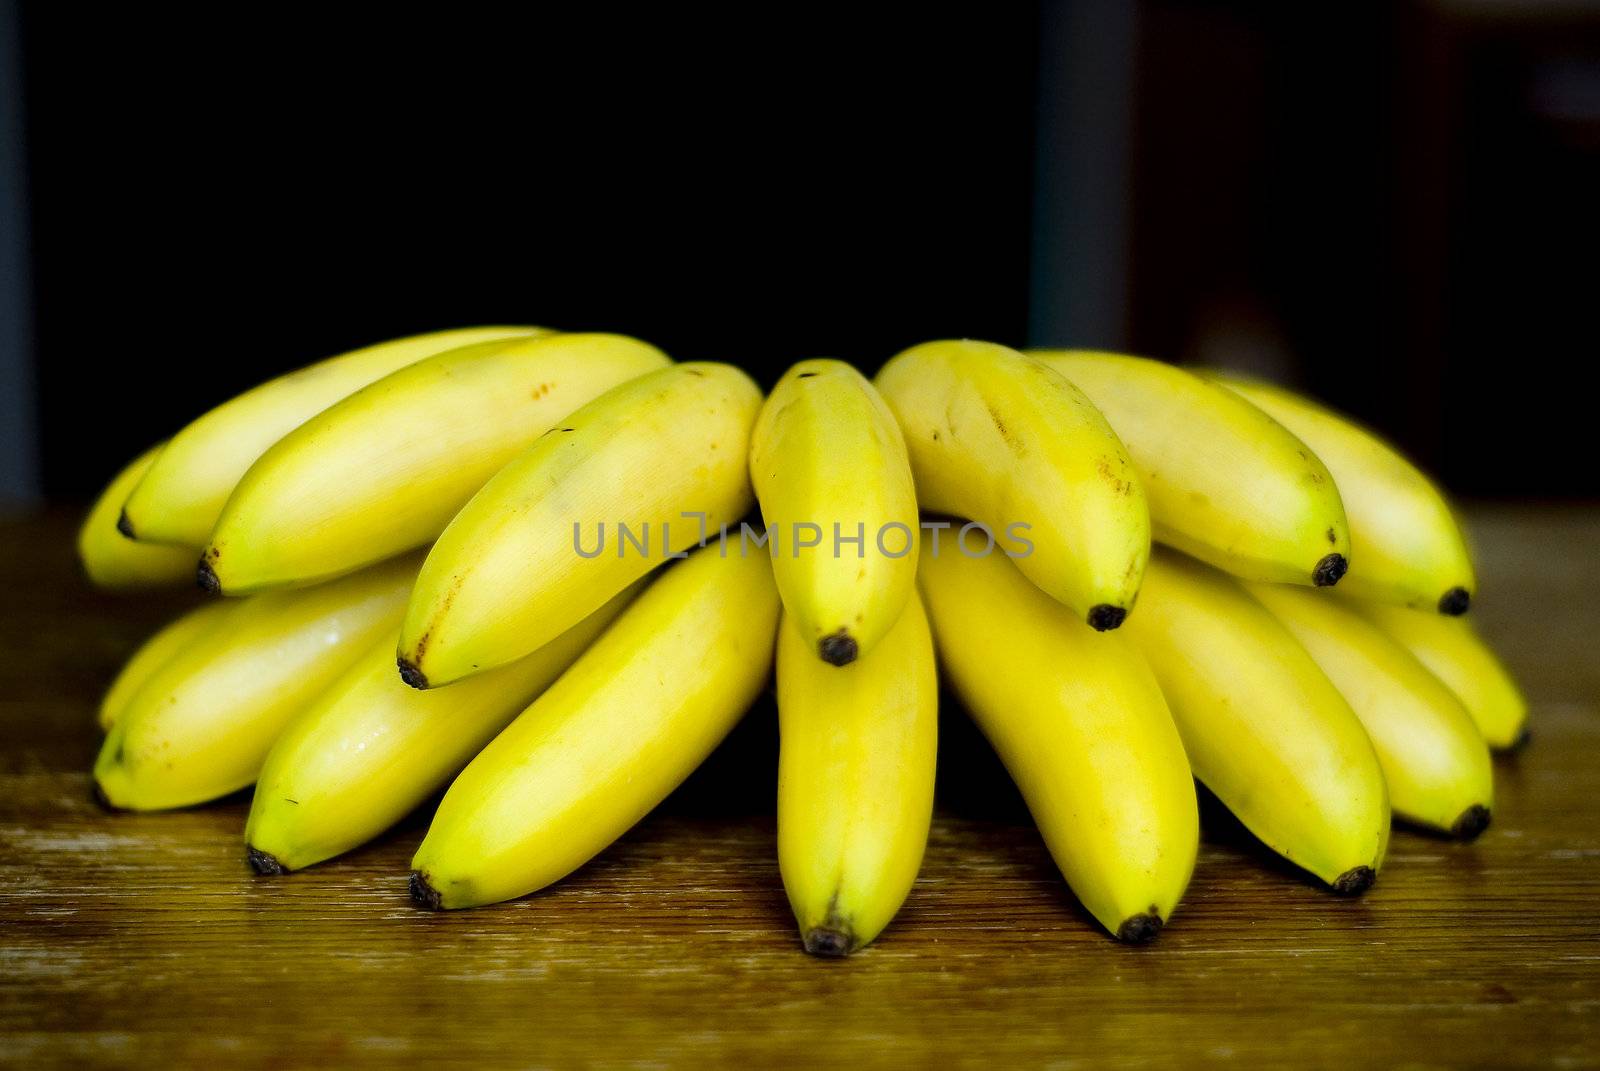 Still life with mini bananas